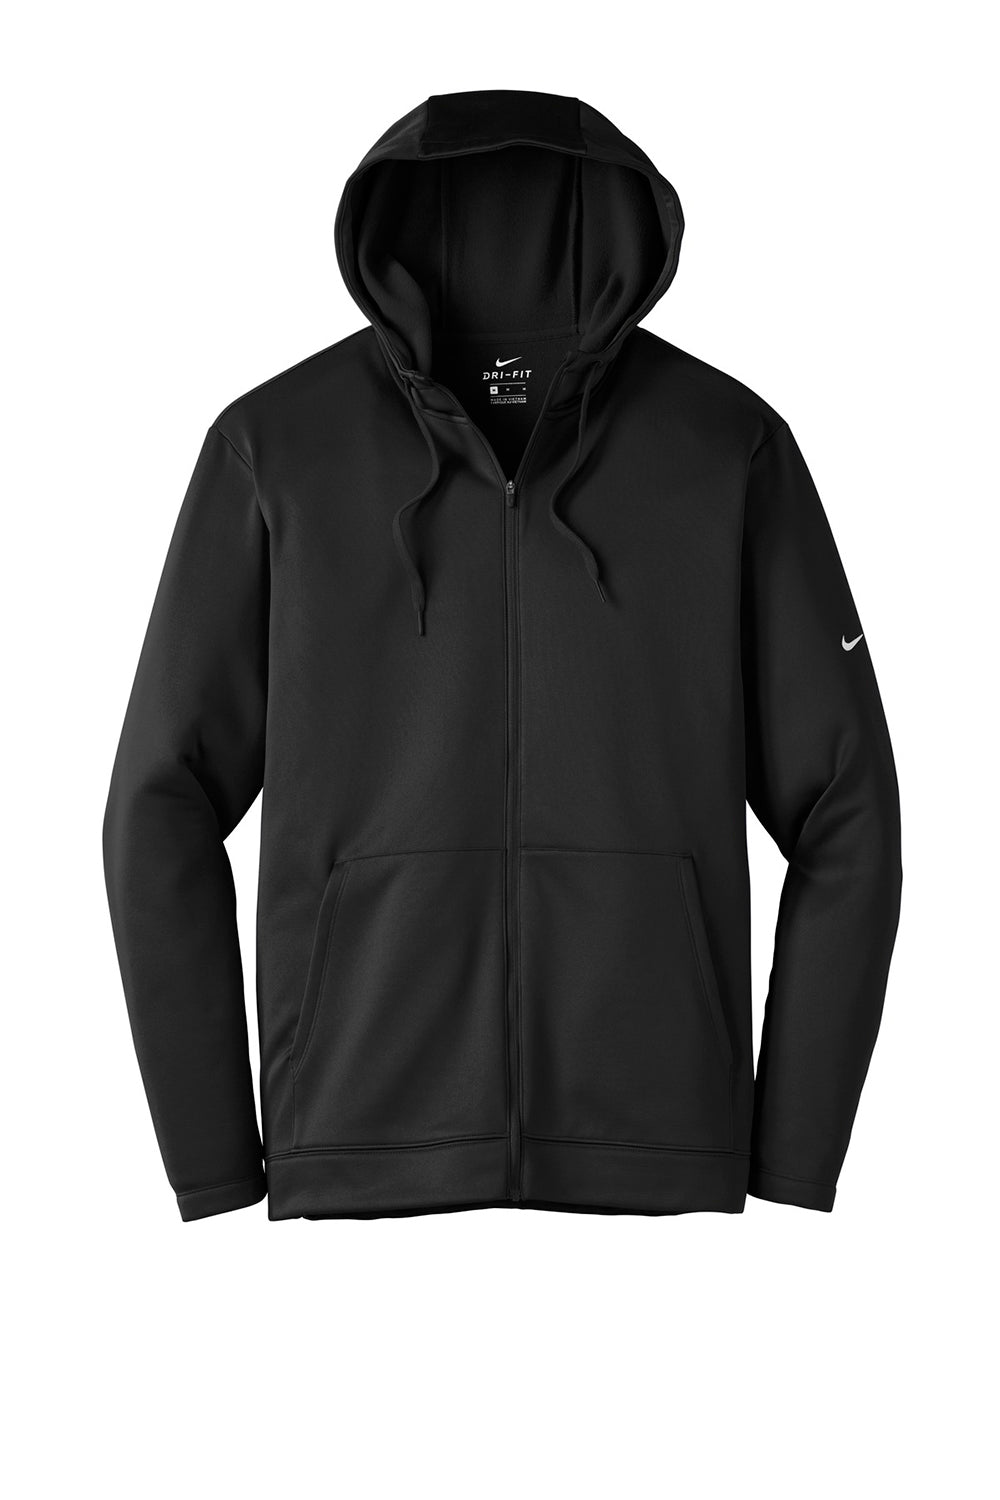 Nike NKAH6259 Mens Therma-Fit Moisture Wicking Fleece Full Zip Hooded Sweatshirt Hoodie Black Flat Front